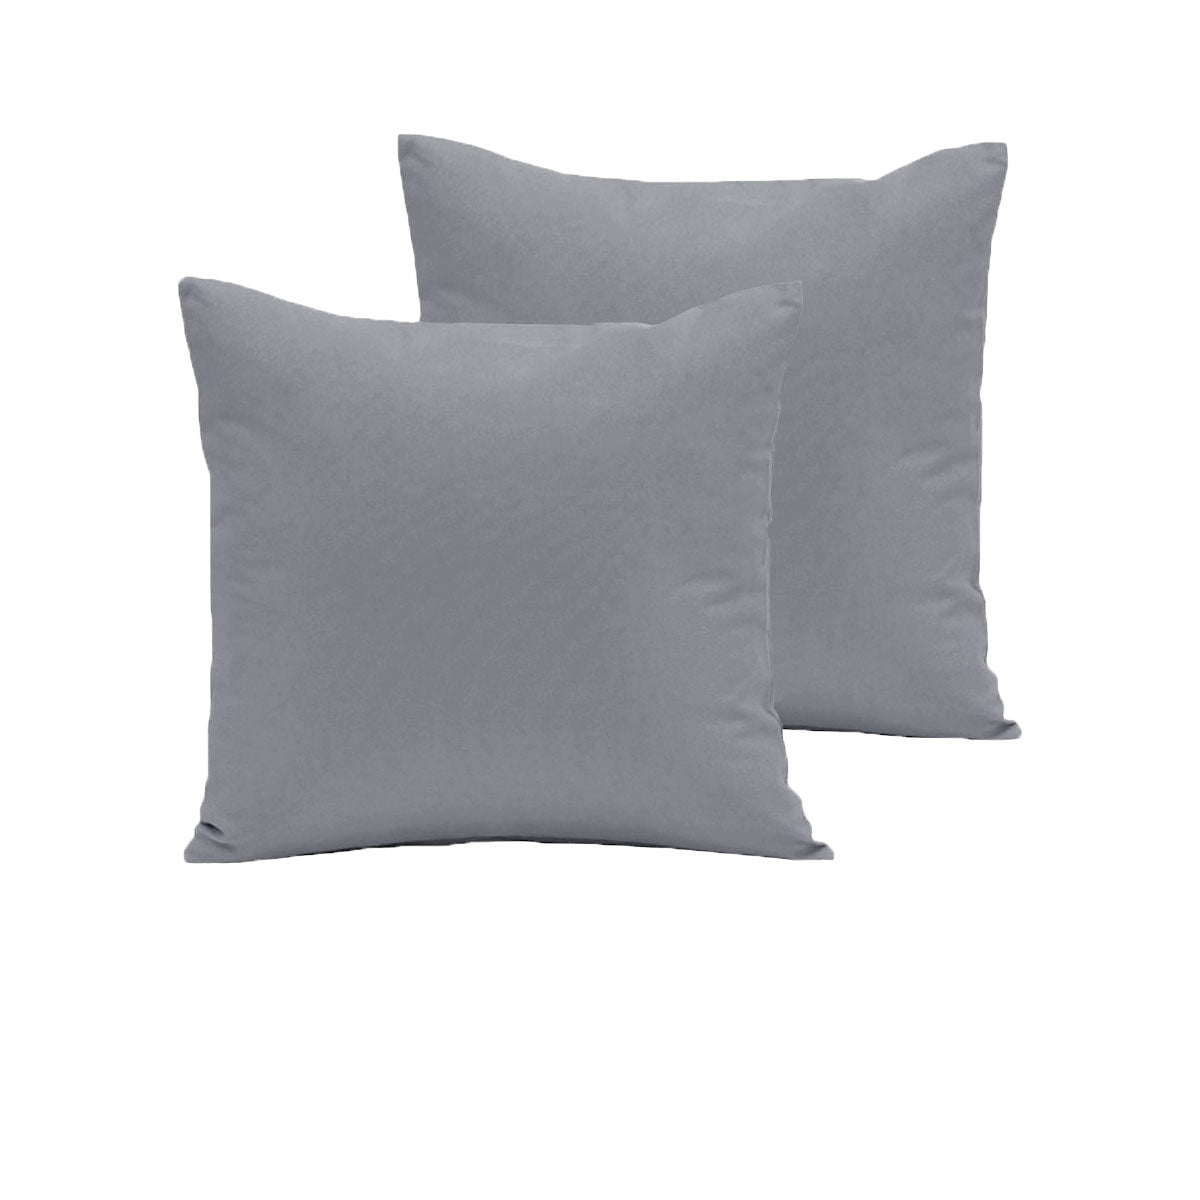 Pair of  280TC Polyester Cotton European Pillowcases Grey